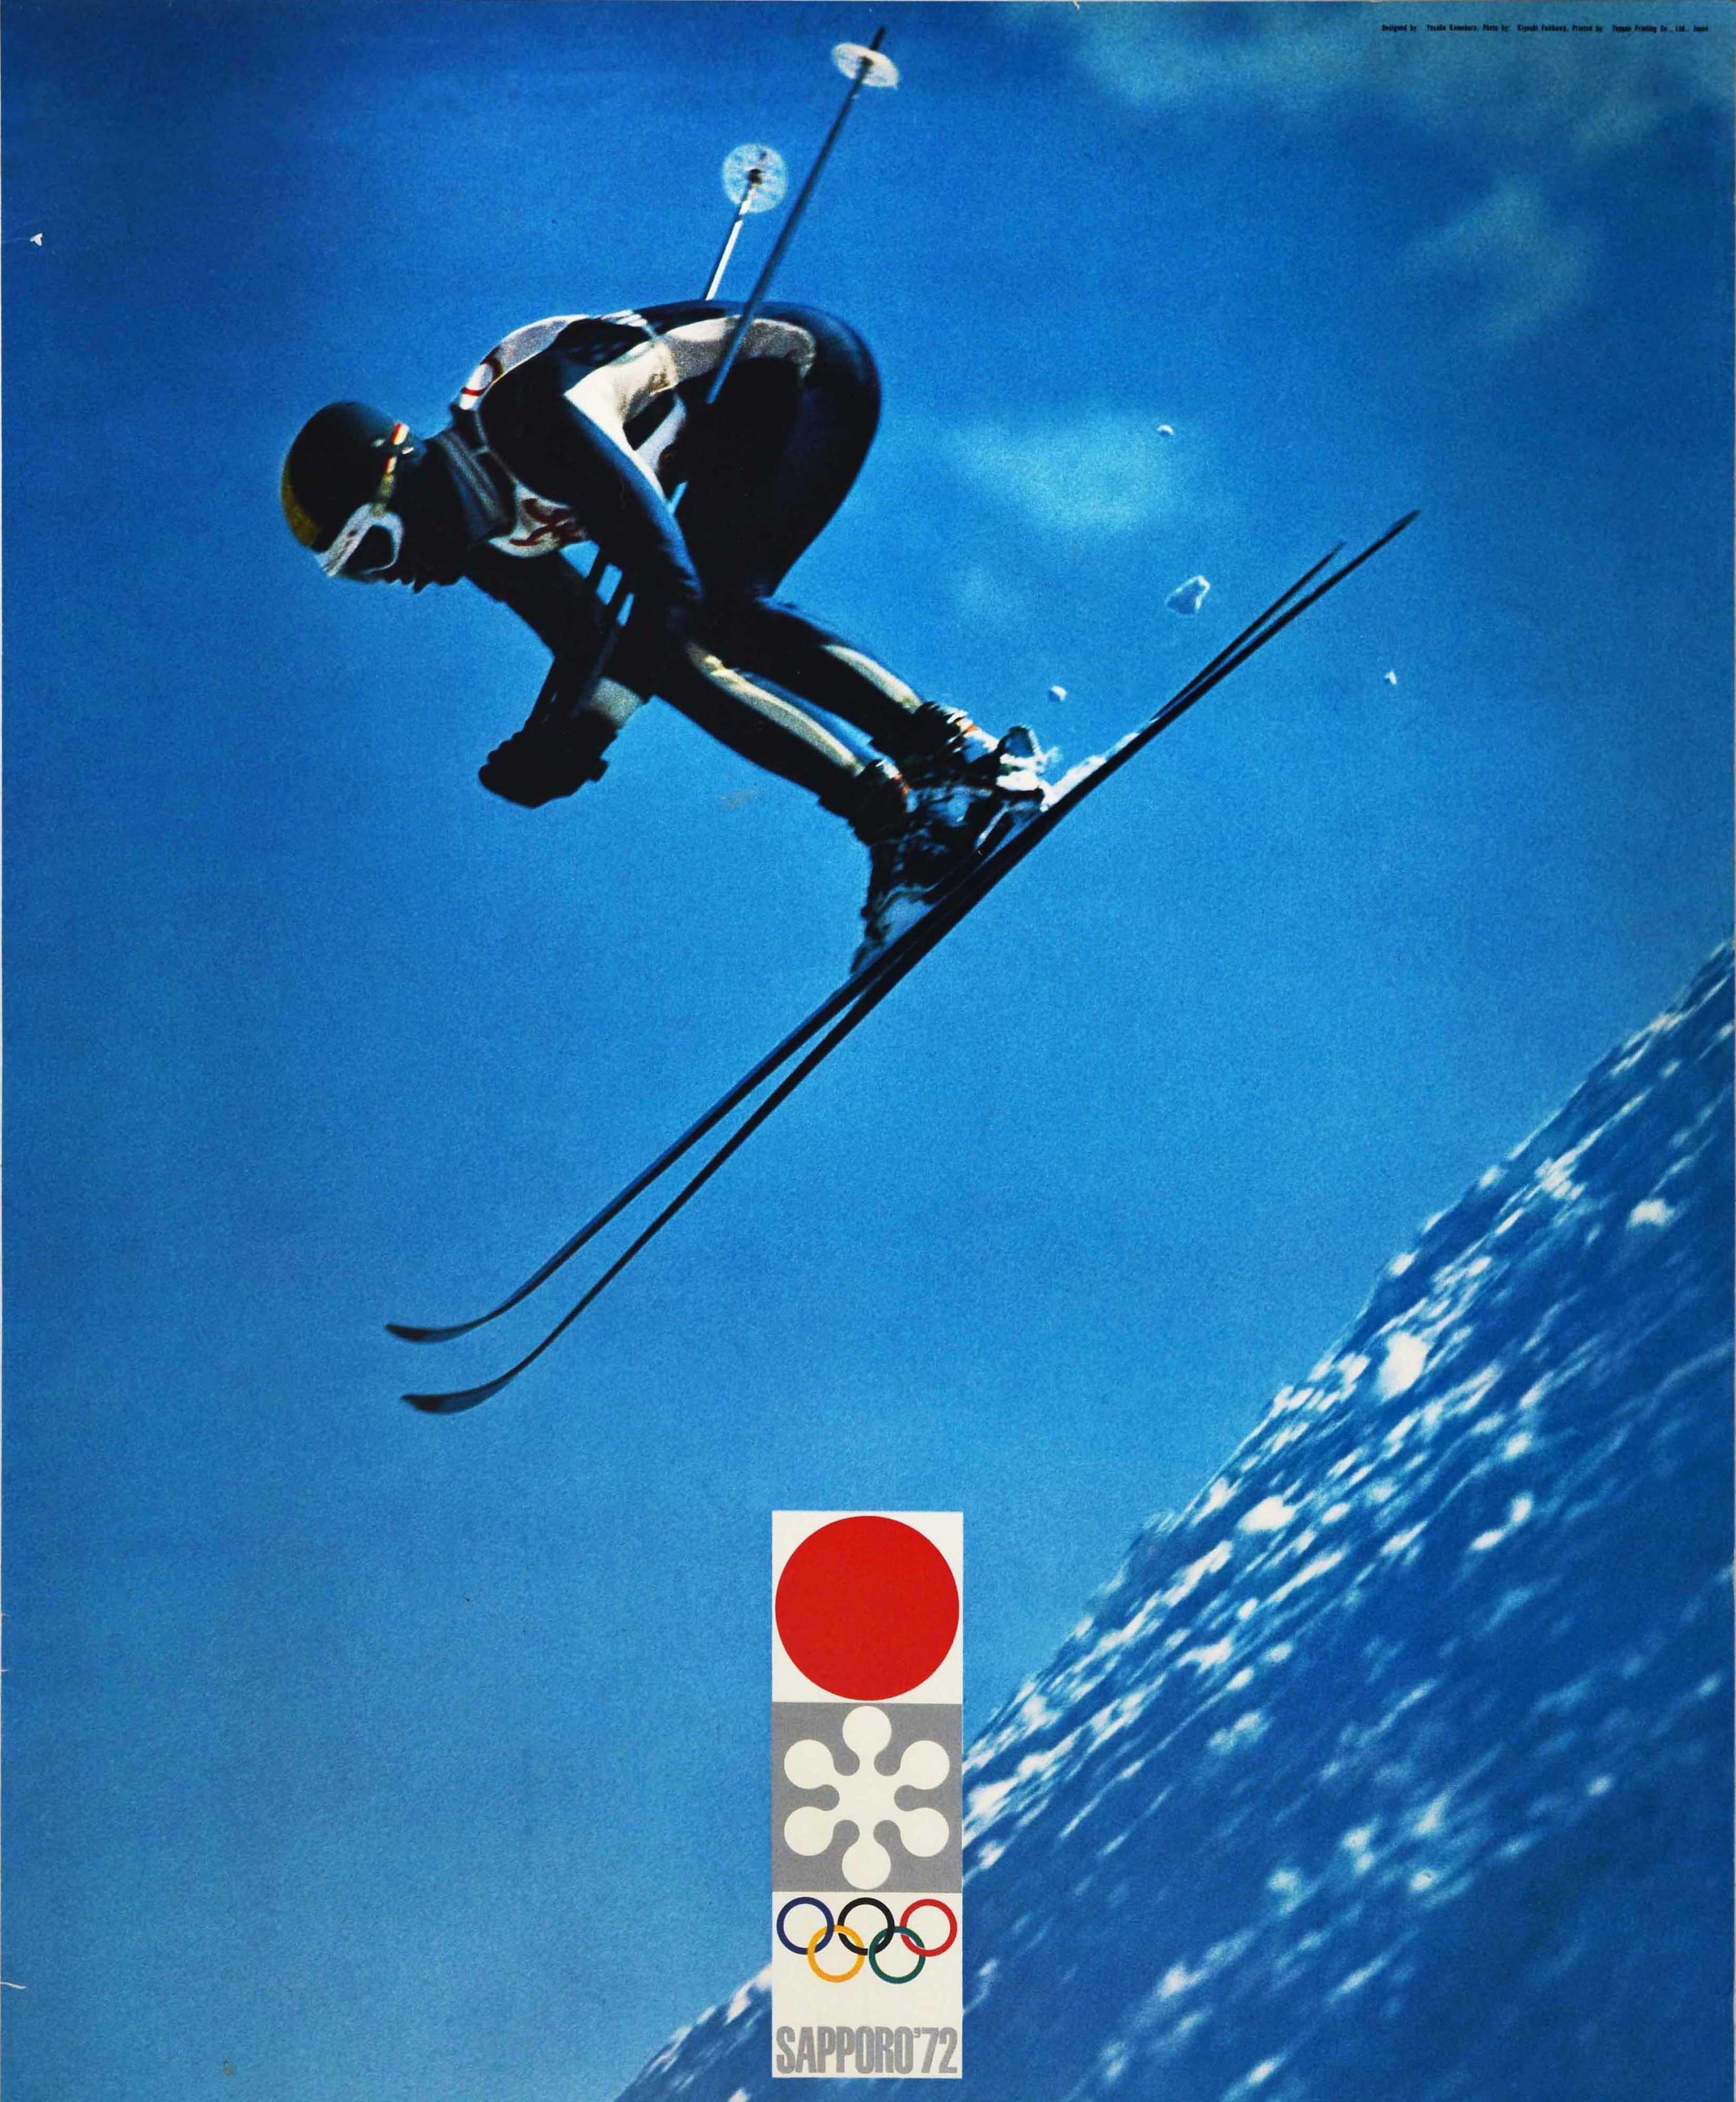 1972 olympics jumper